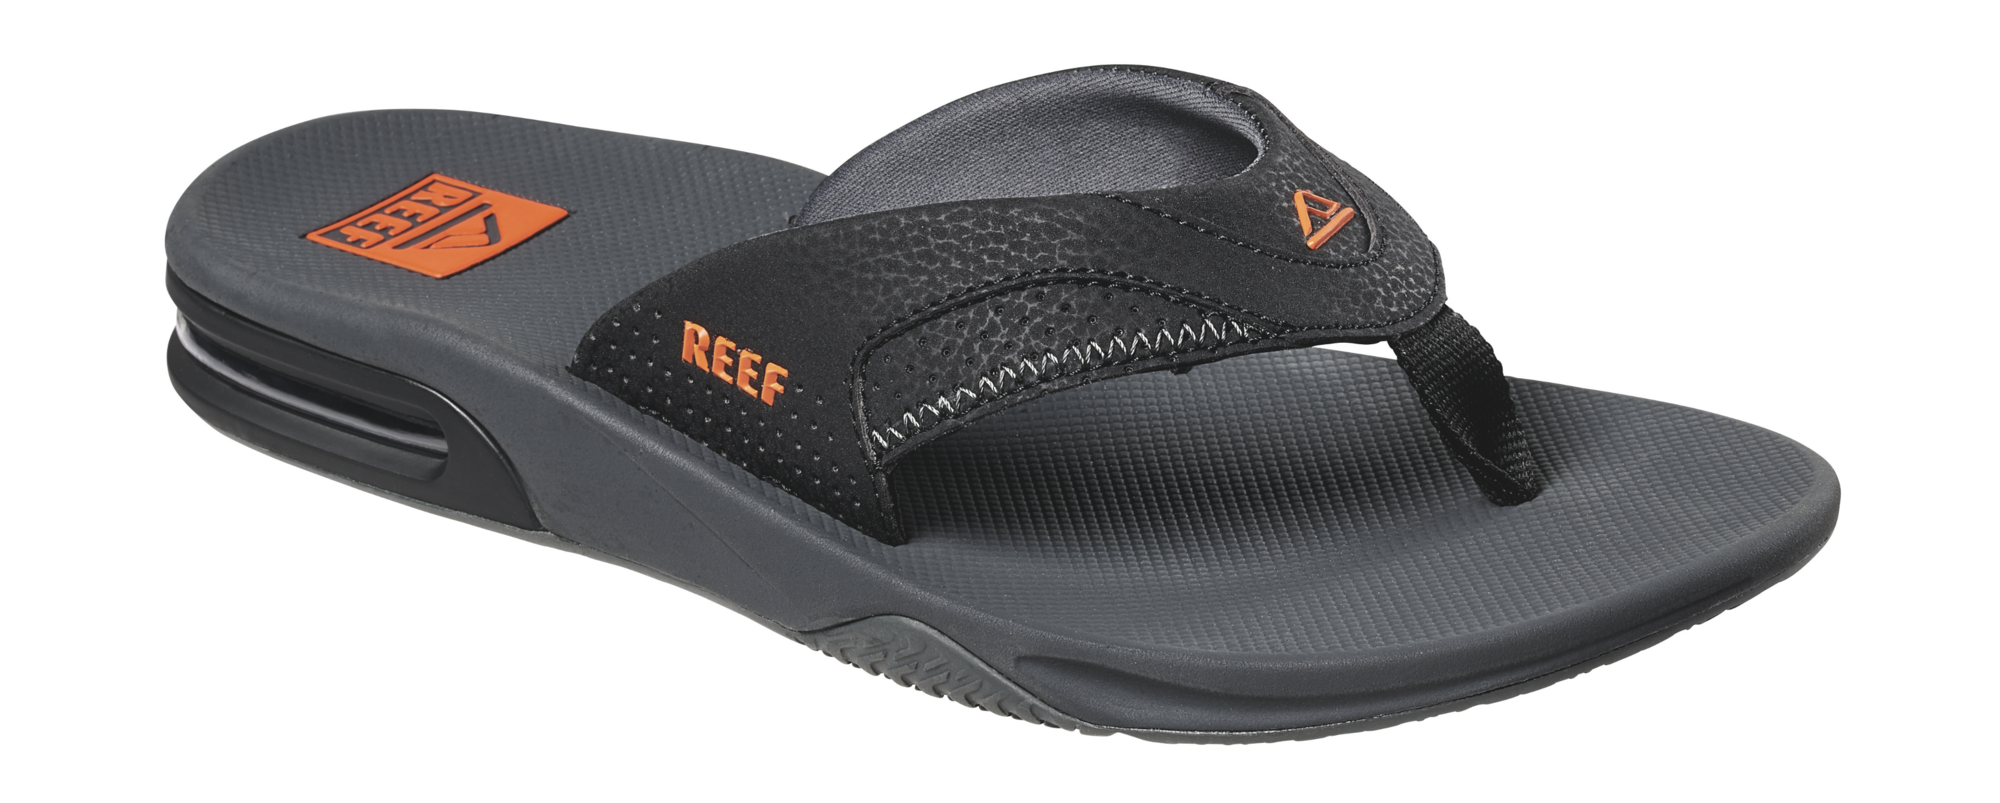 Reef Fanning slippers neon orange | Slippery.nl - Dé online slipperwinkel!